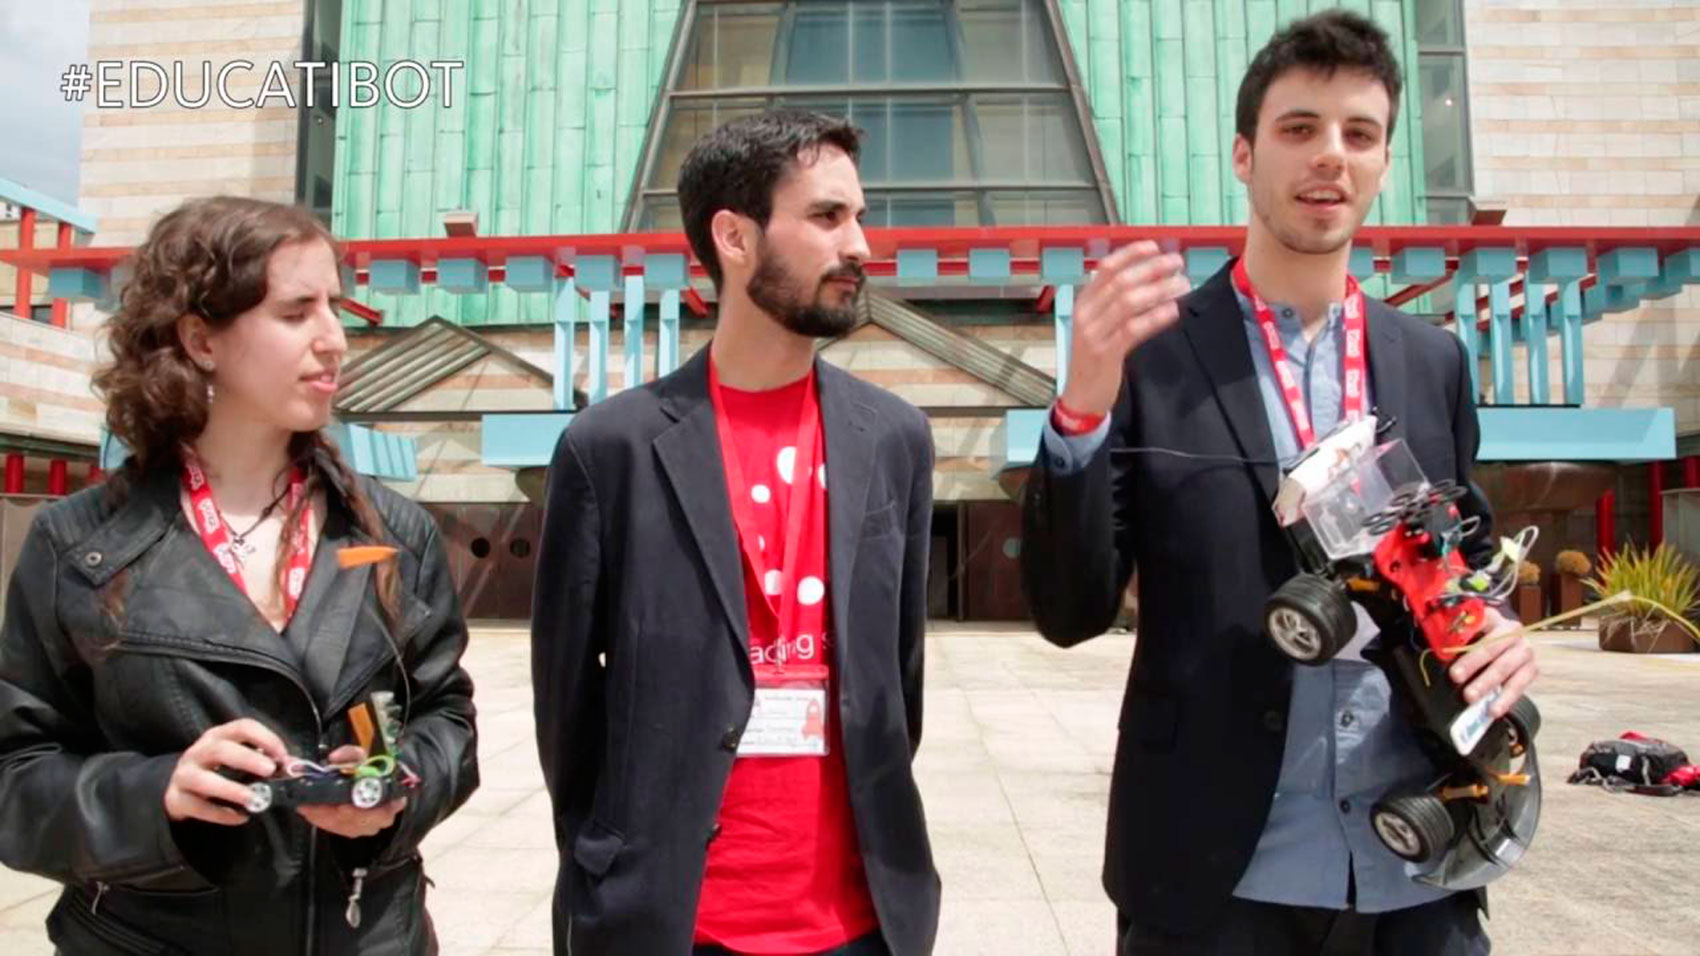 Mara Ruano, Guillermo Lobato y Sergio Mrquez, promotores de Educatibot